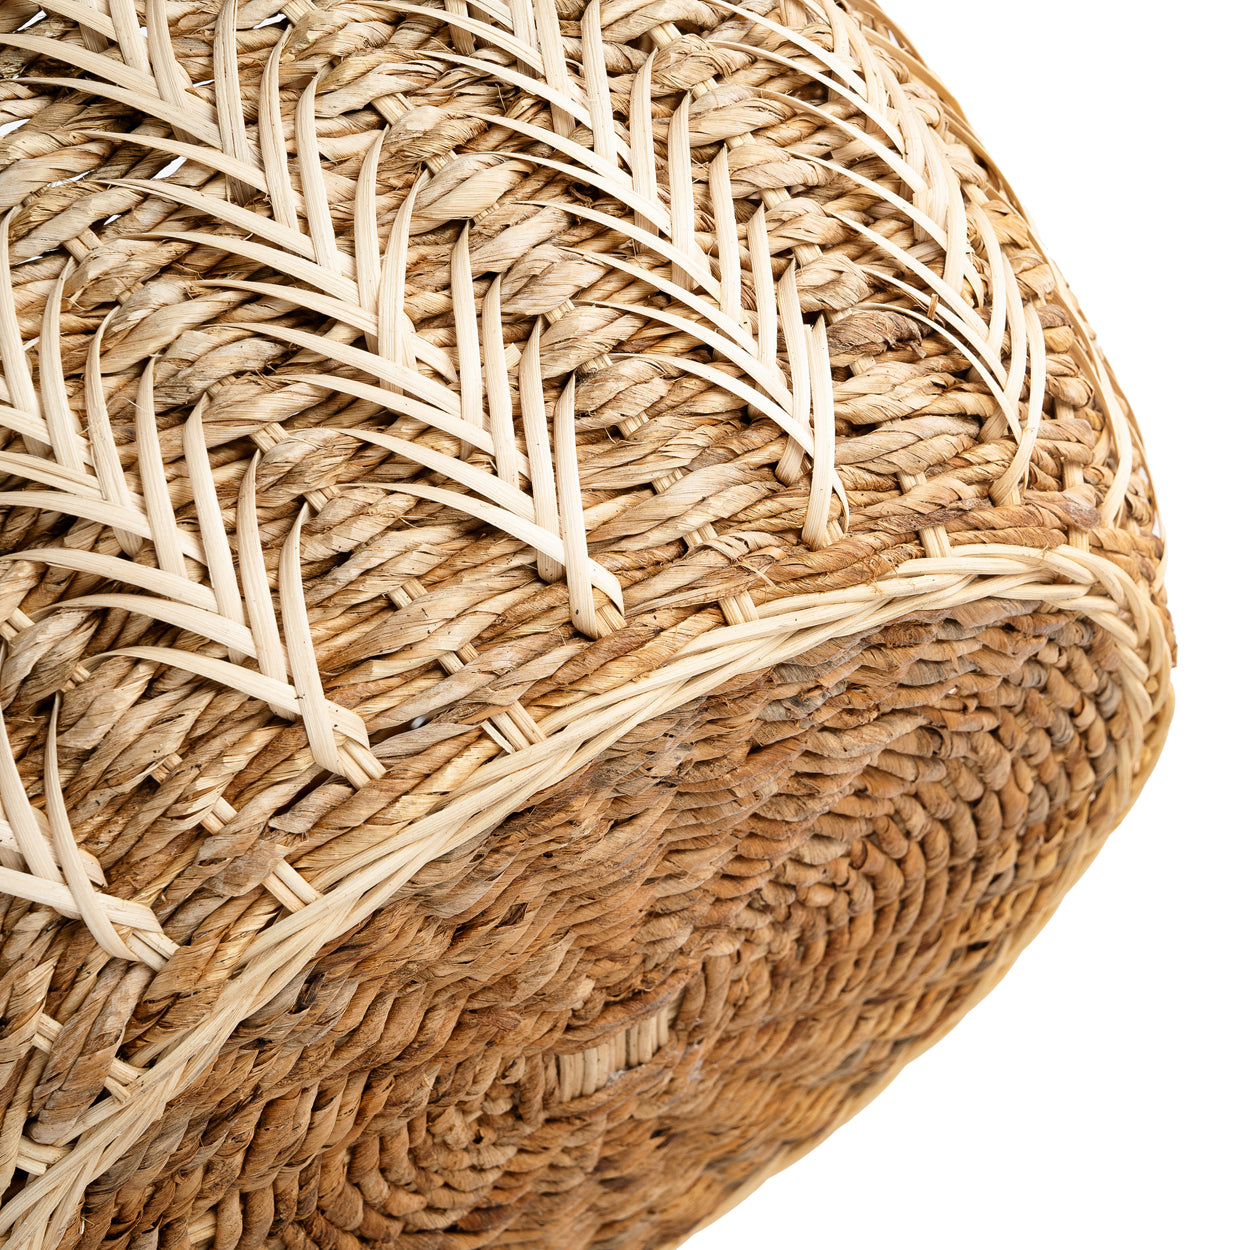 Luziru Basket Natural - Medium